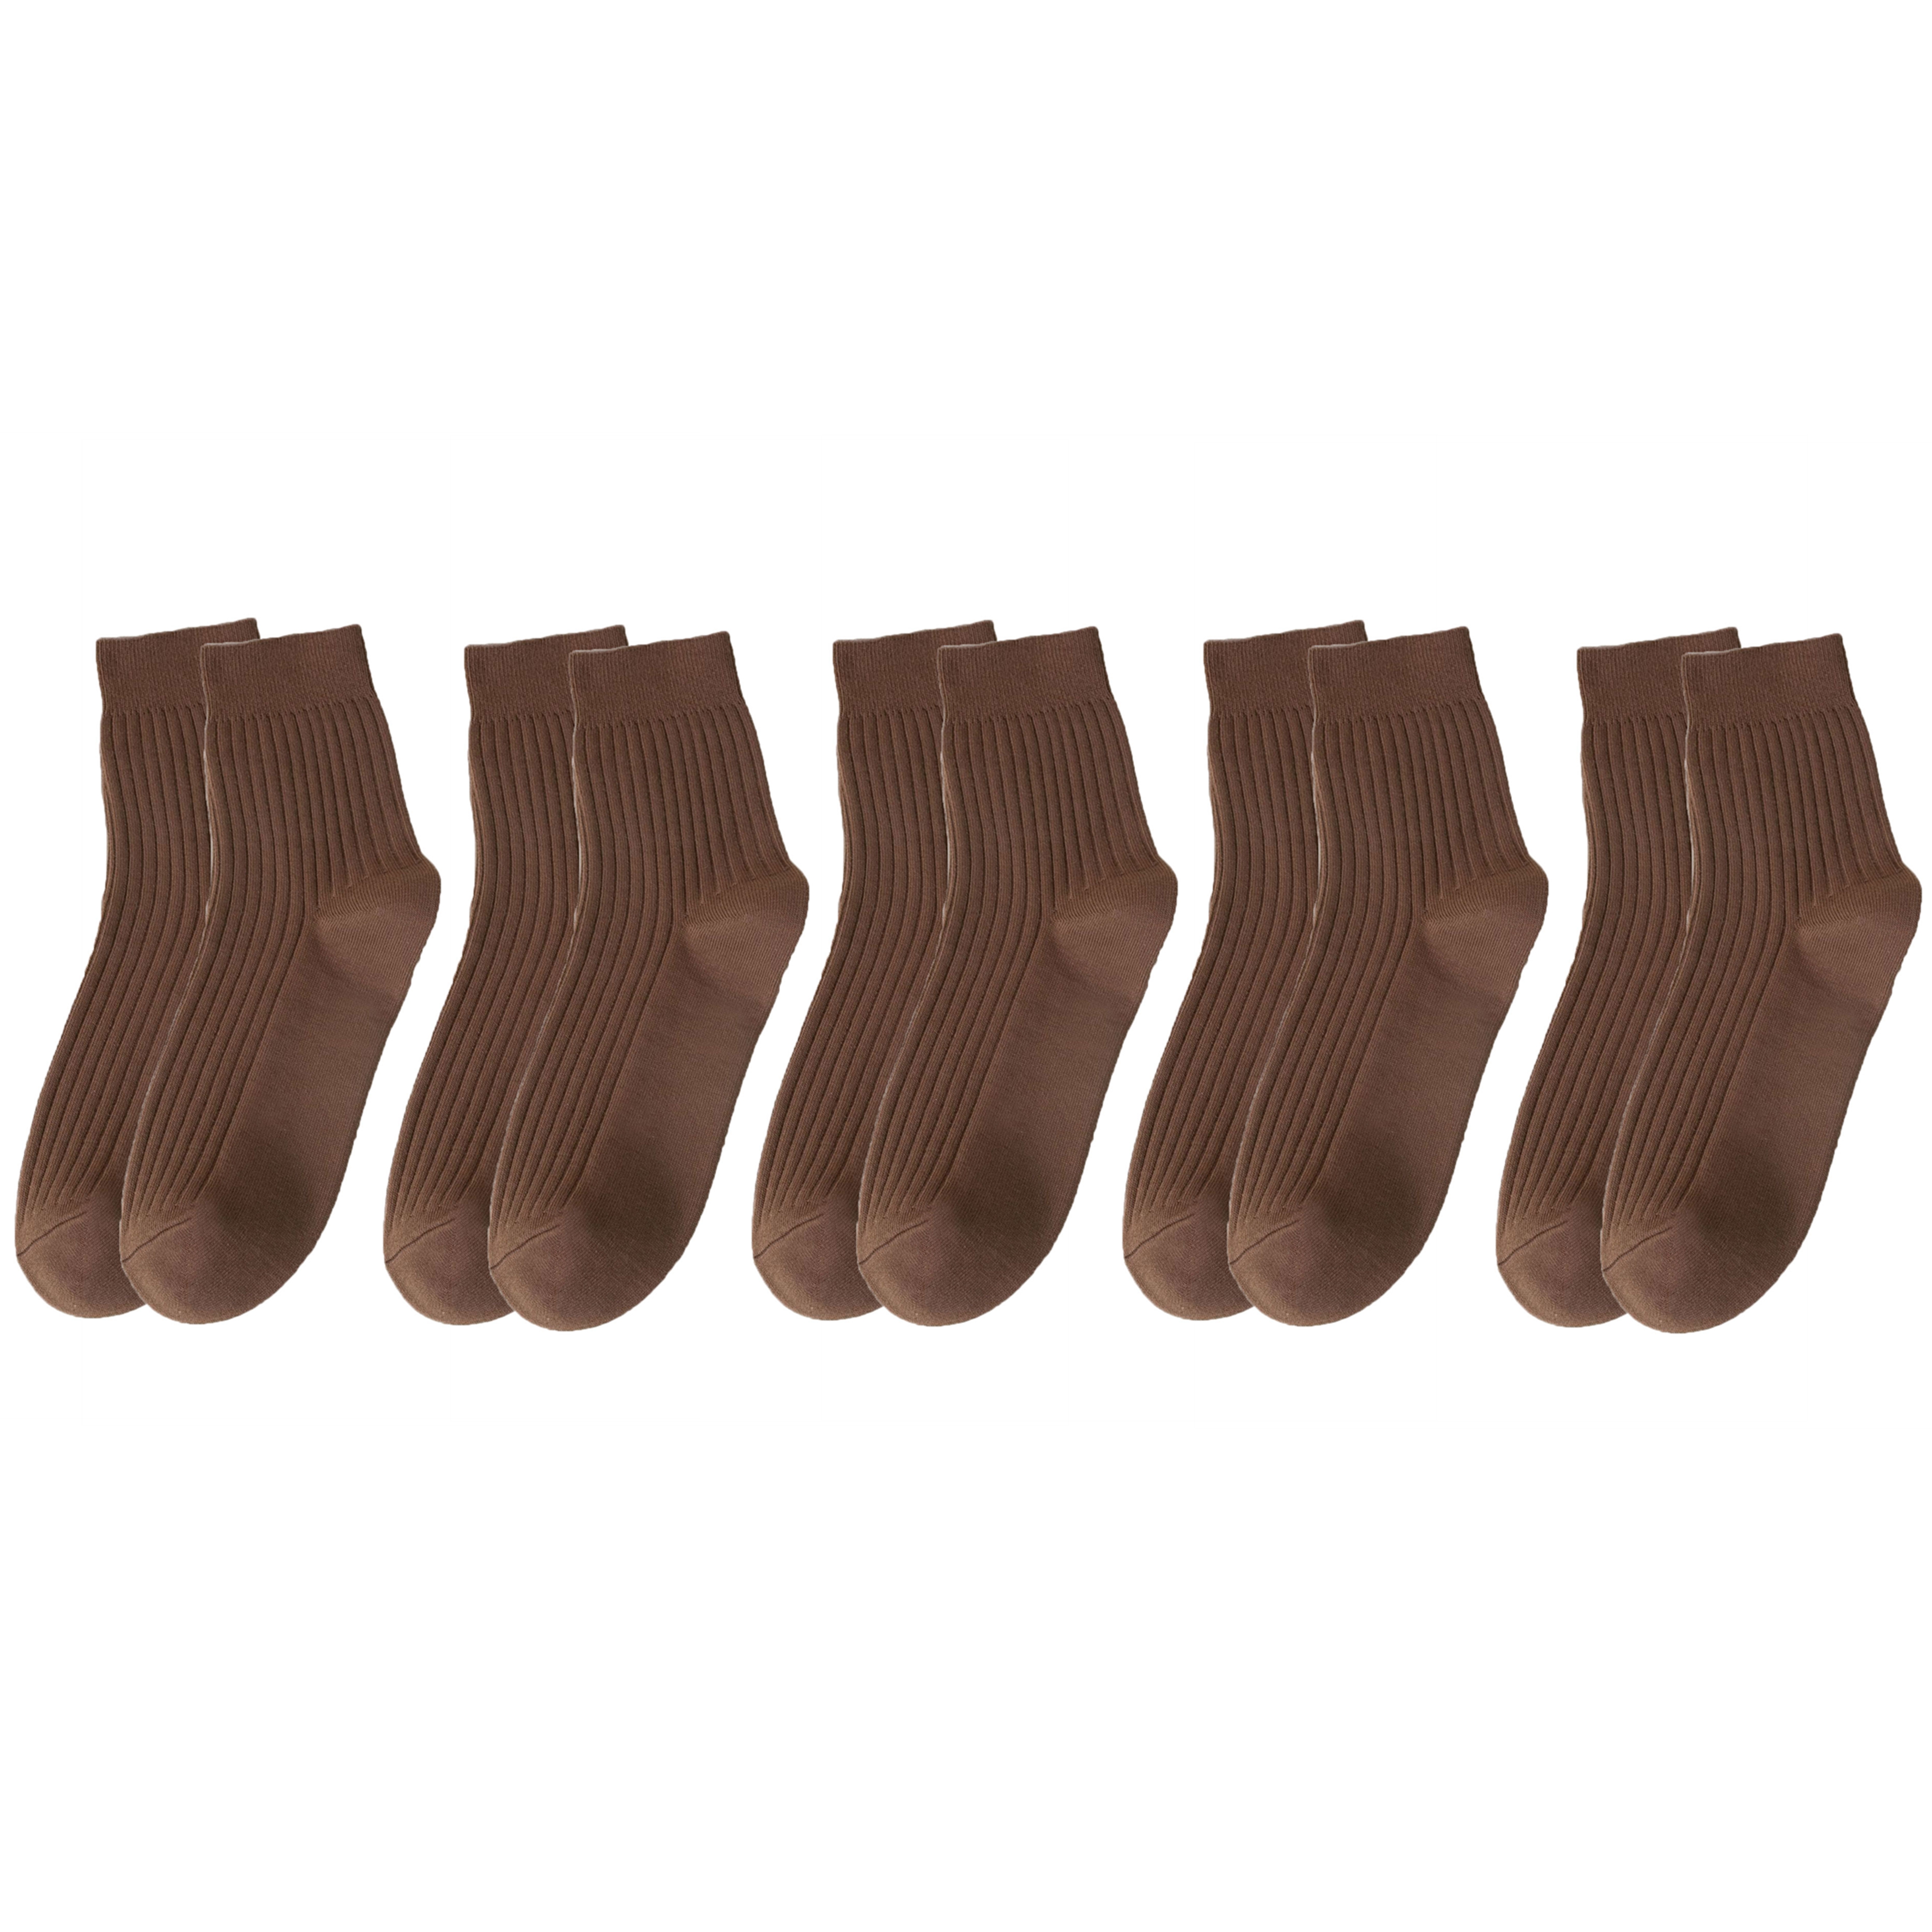 5 Pairs Cotton Socks for Men Brown Durable Socks Resistant to Pilling Socks Medium Length